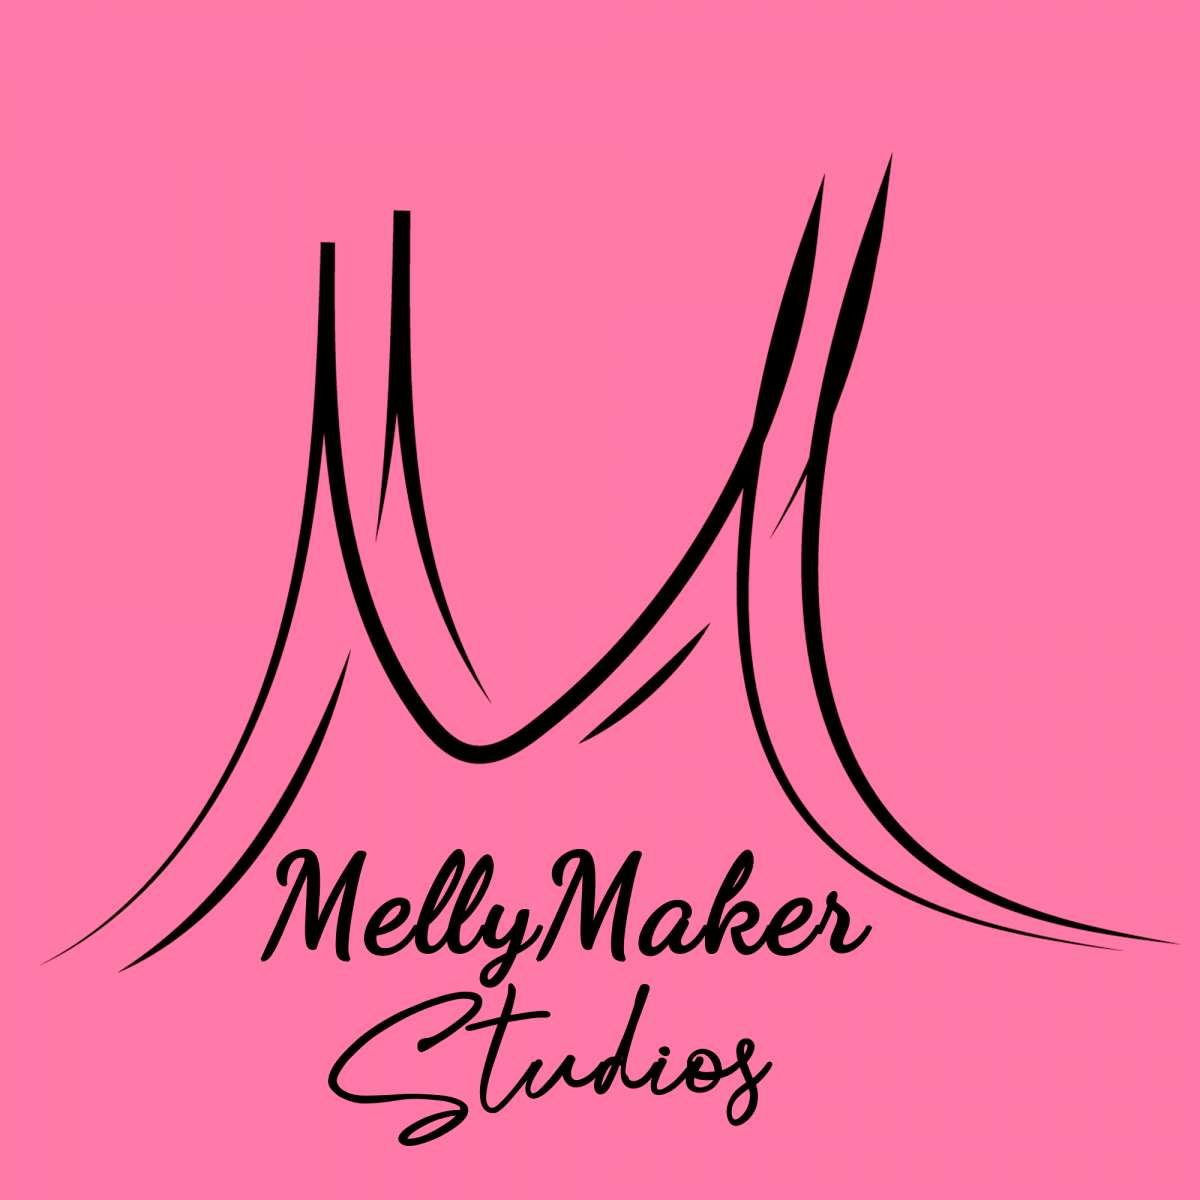 MellyMaker Studios - Madrid - Servicios de transferencia de vídeos